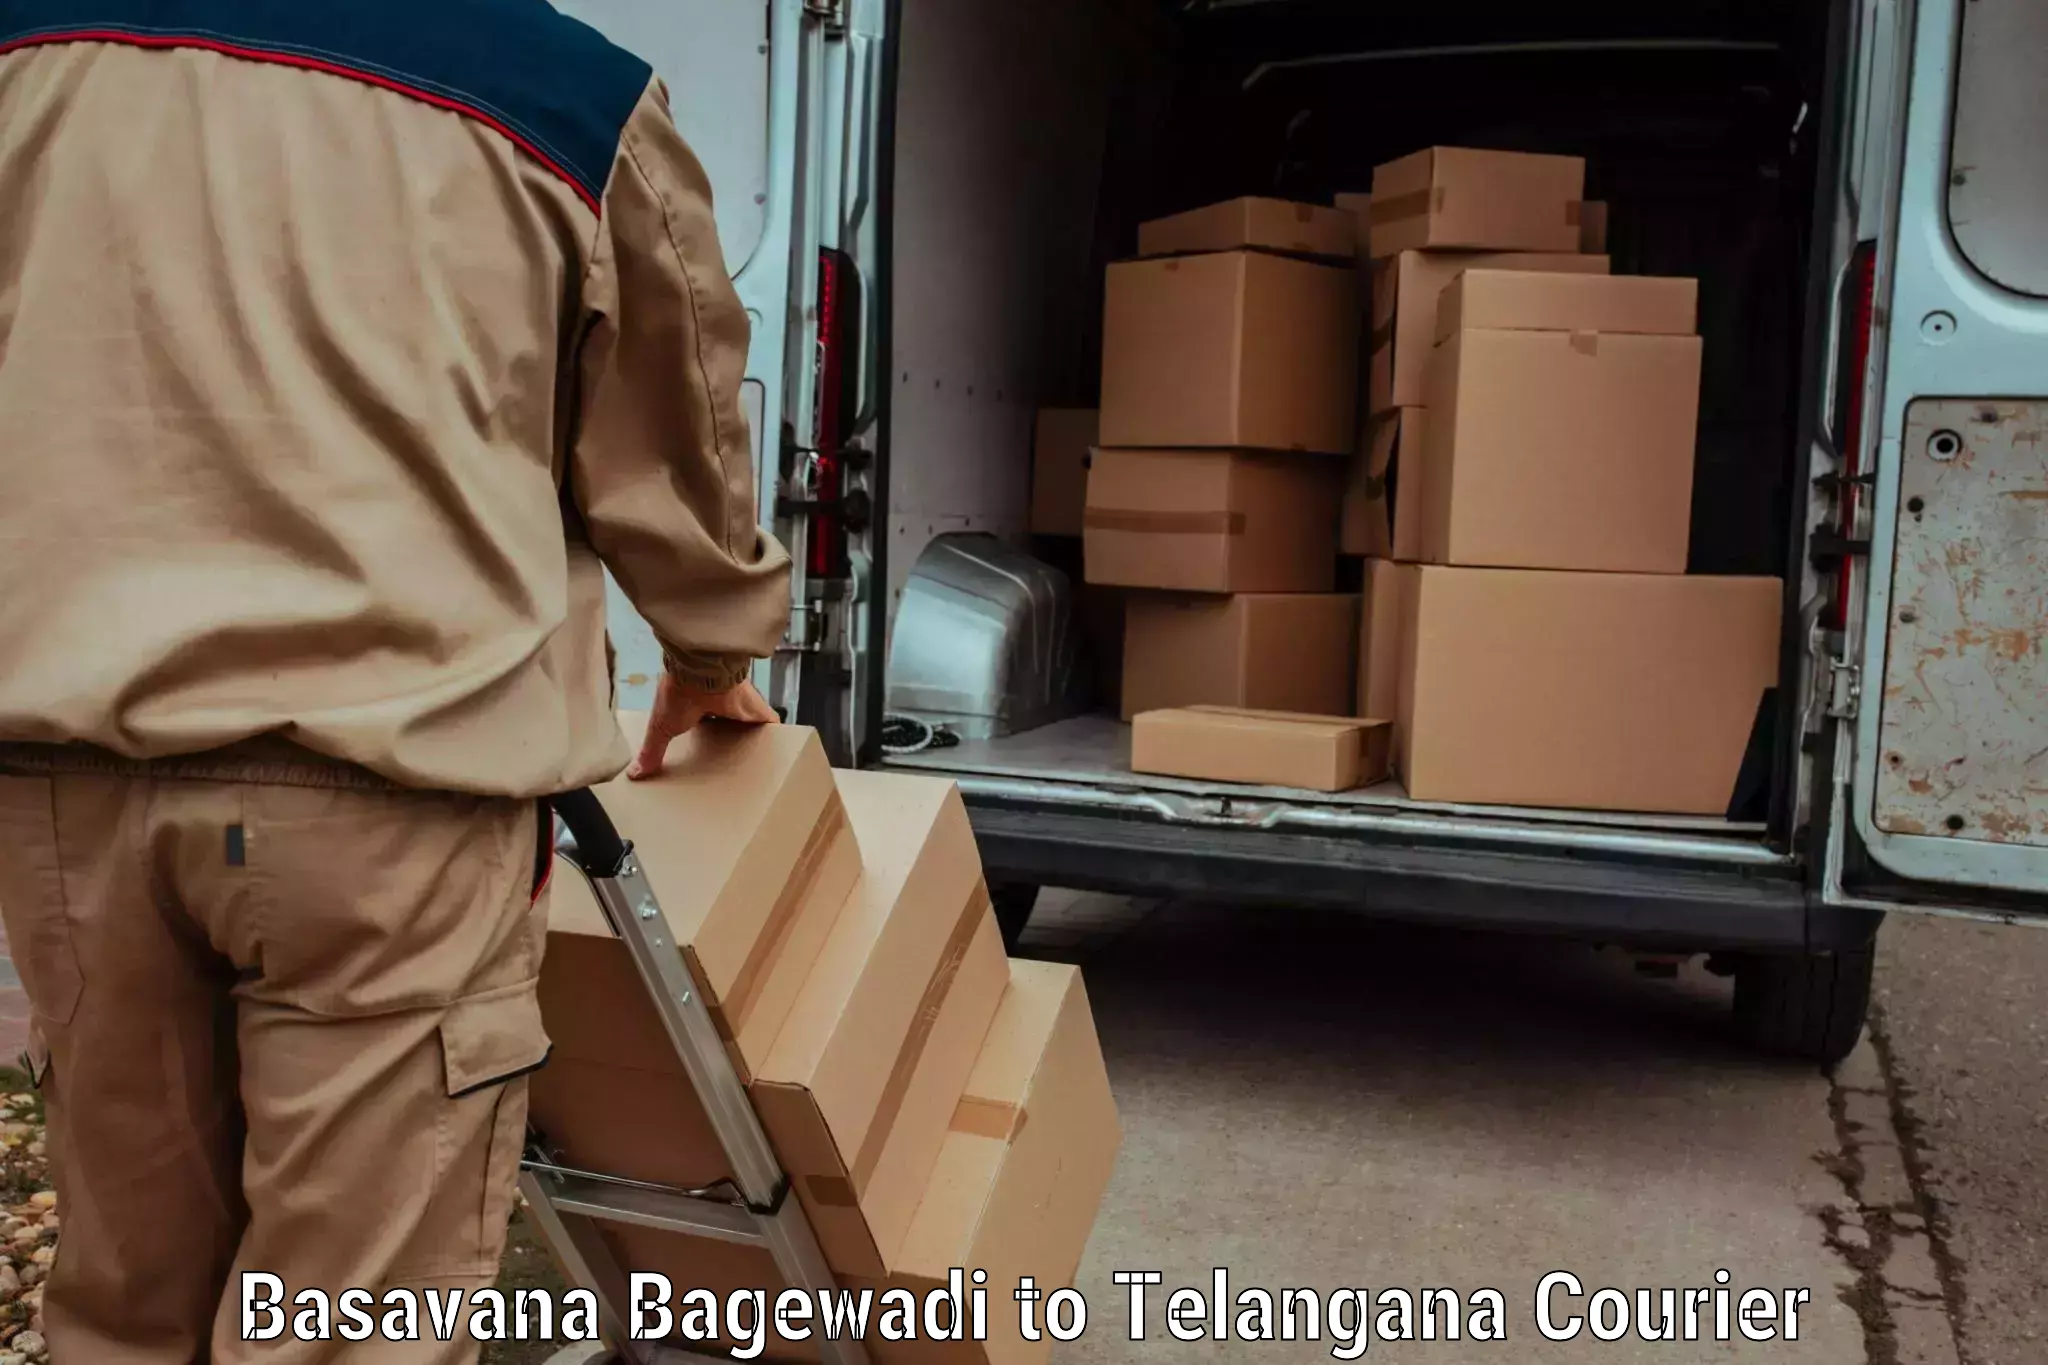 Nationwide parcel services Basavana Bagewadi to Amangal